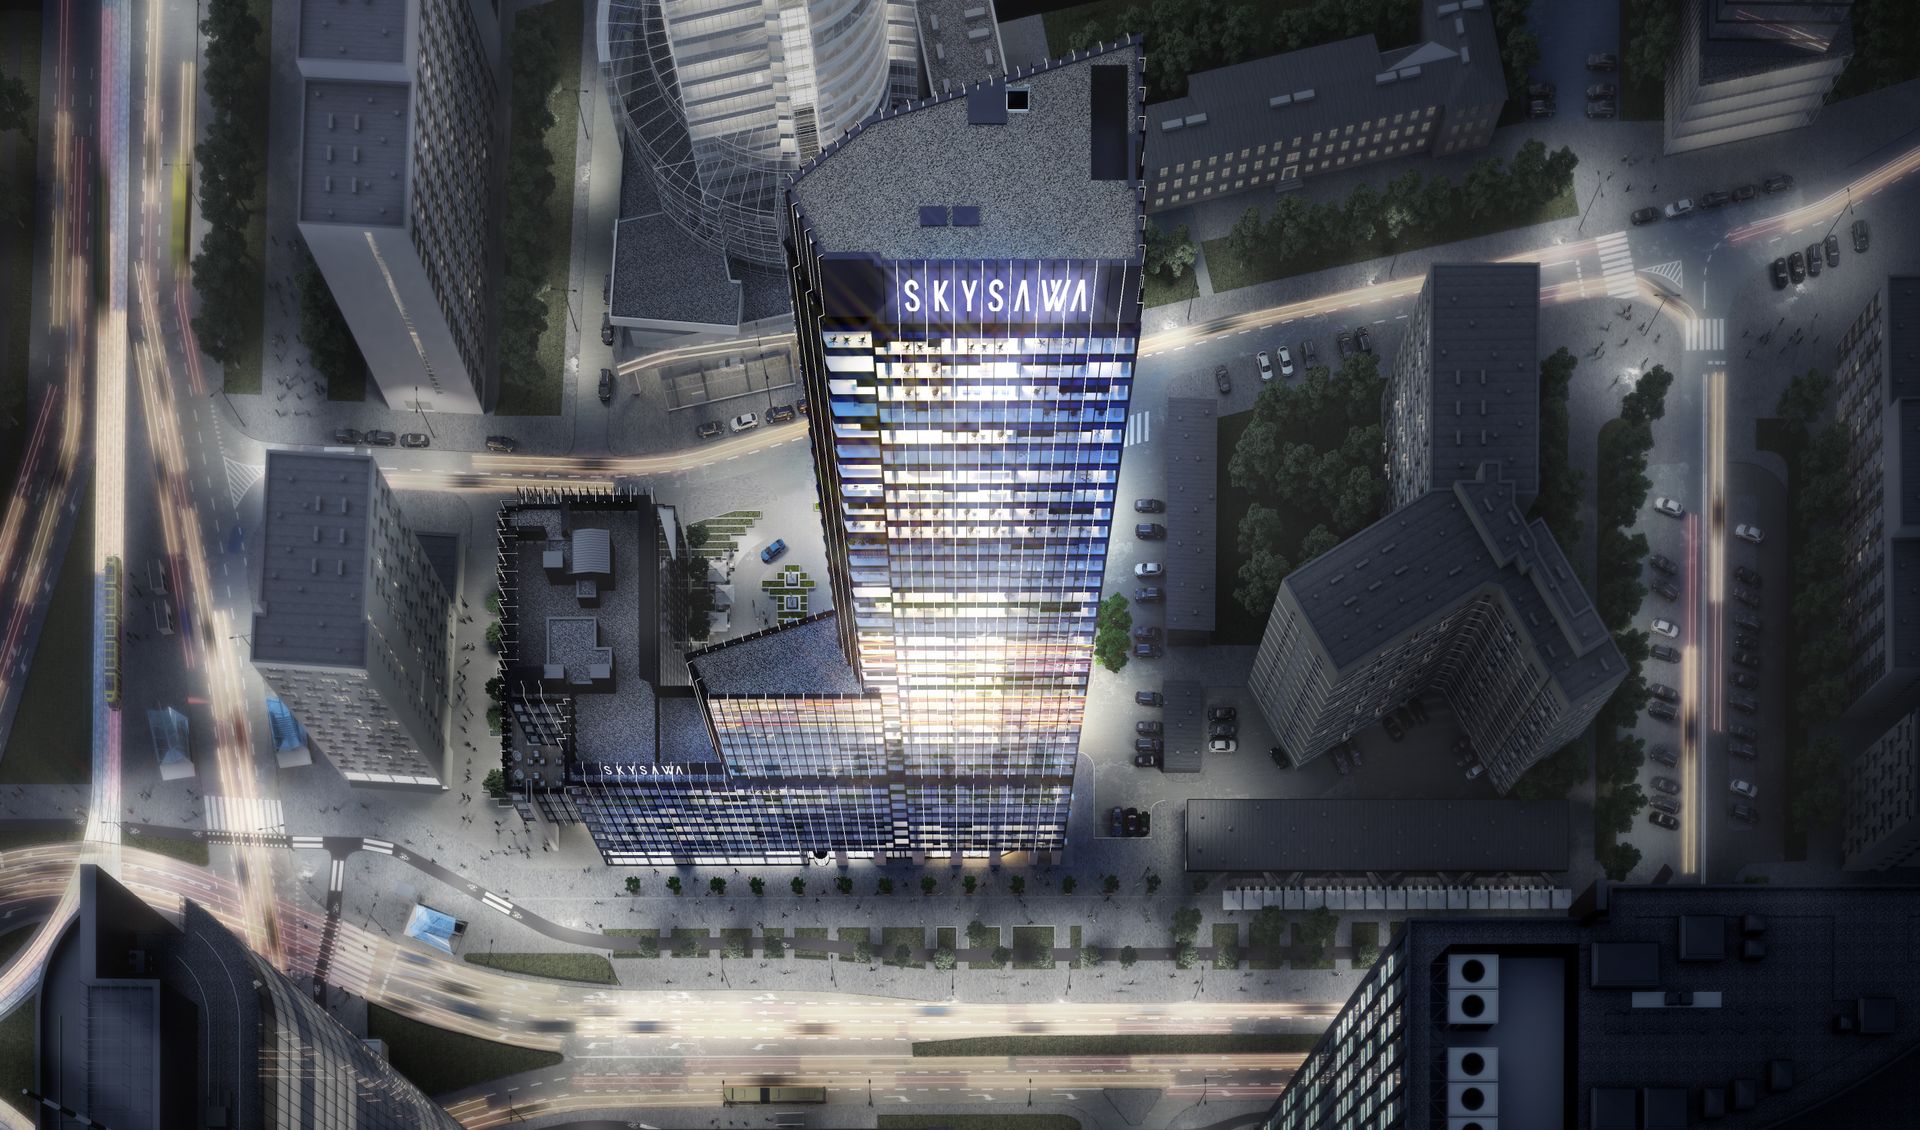 W centrum Warszawy trwa budowa 155-metrowego biurowca w kompleksie Skysawa 